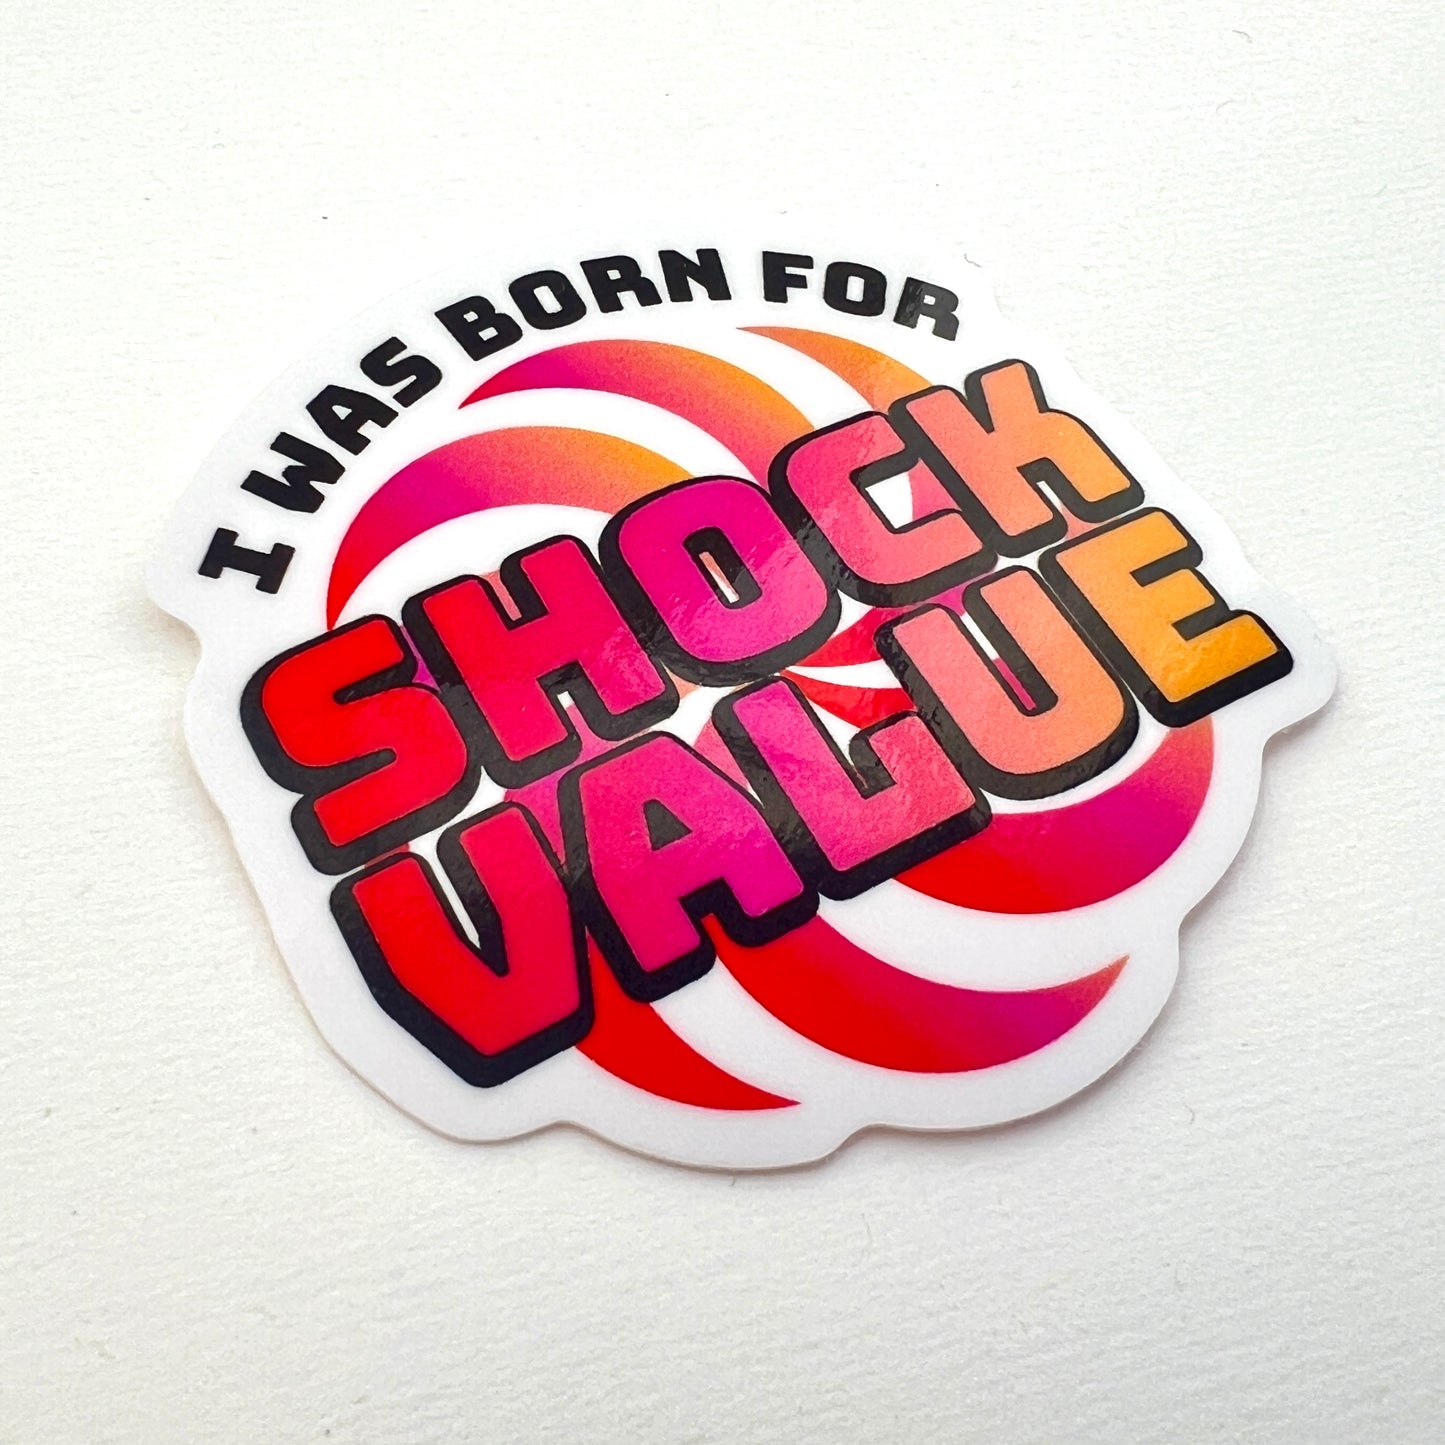 Born for Shock Value vinyl sticker